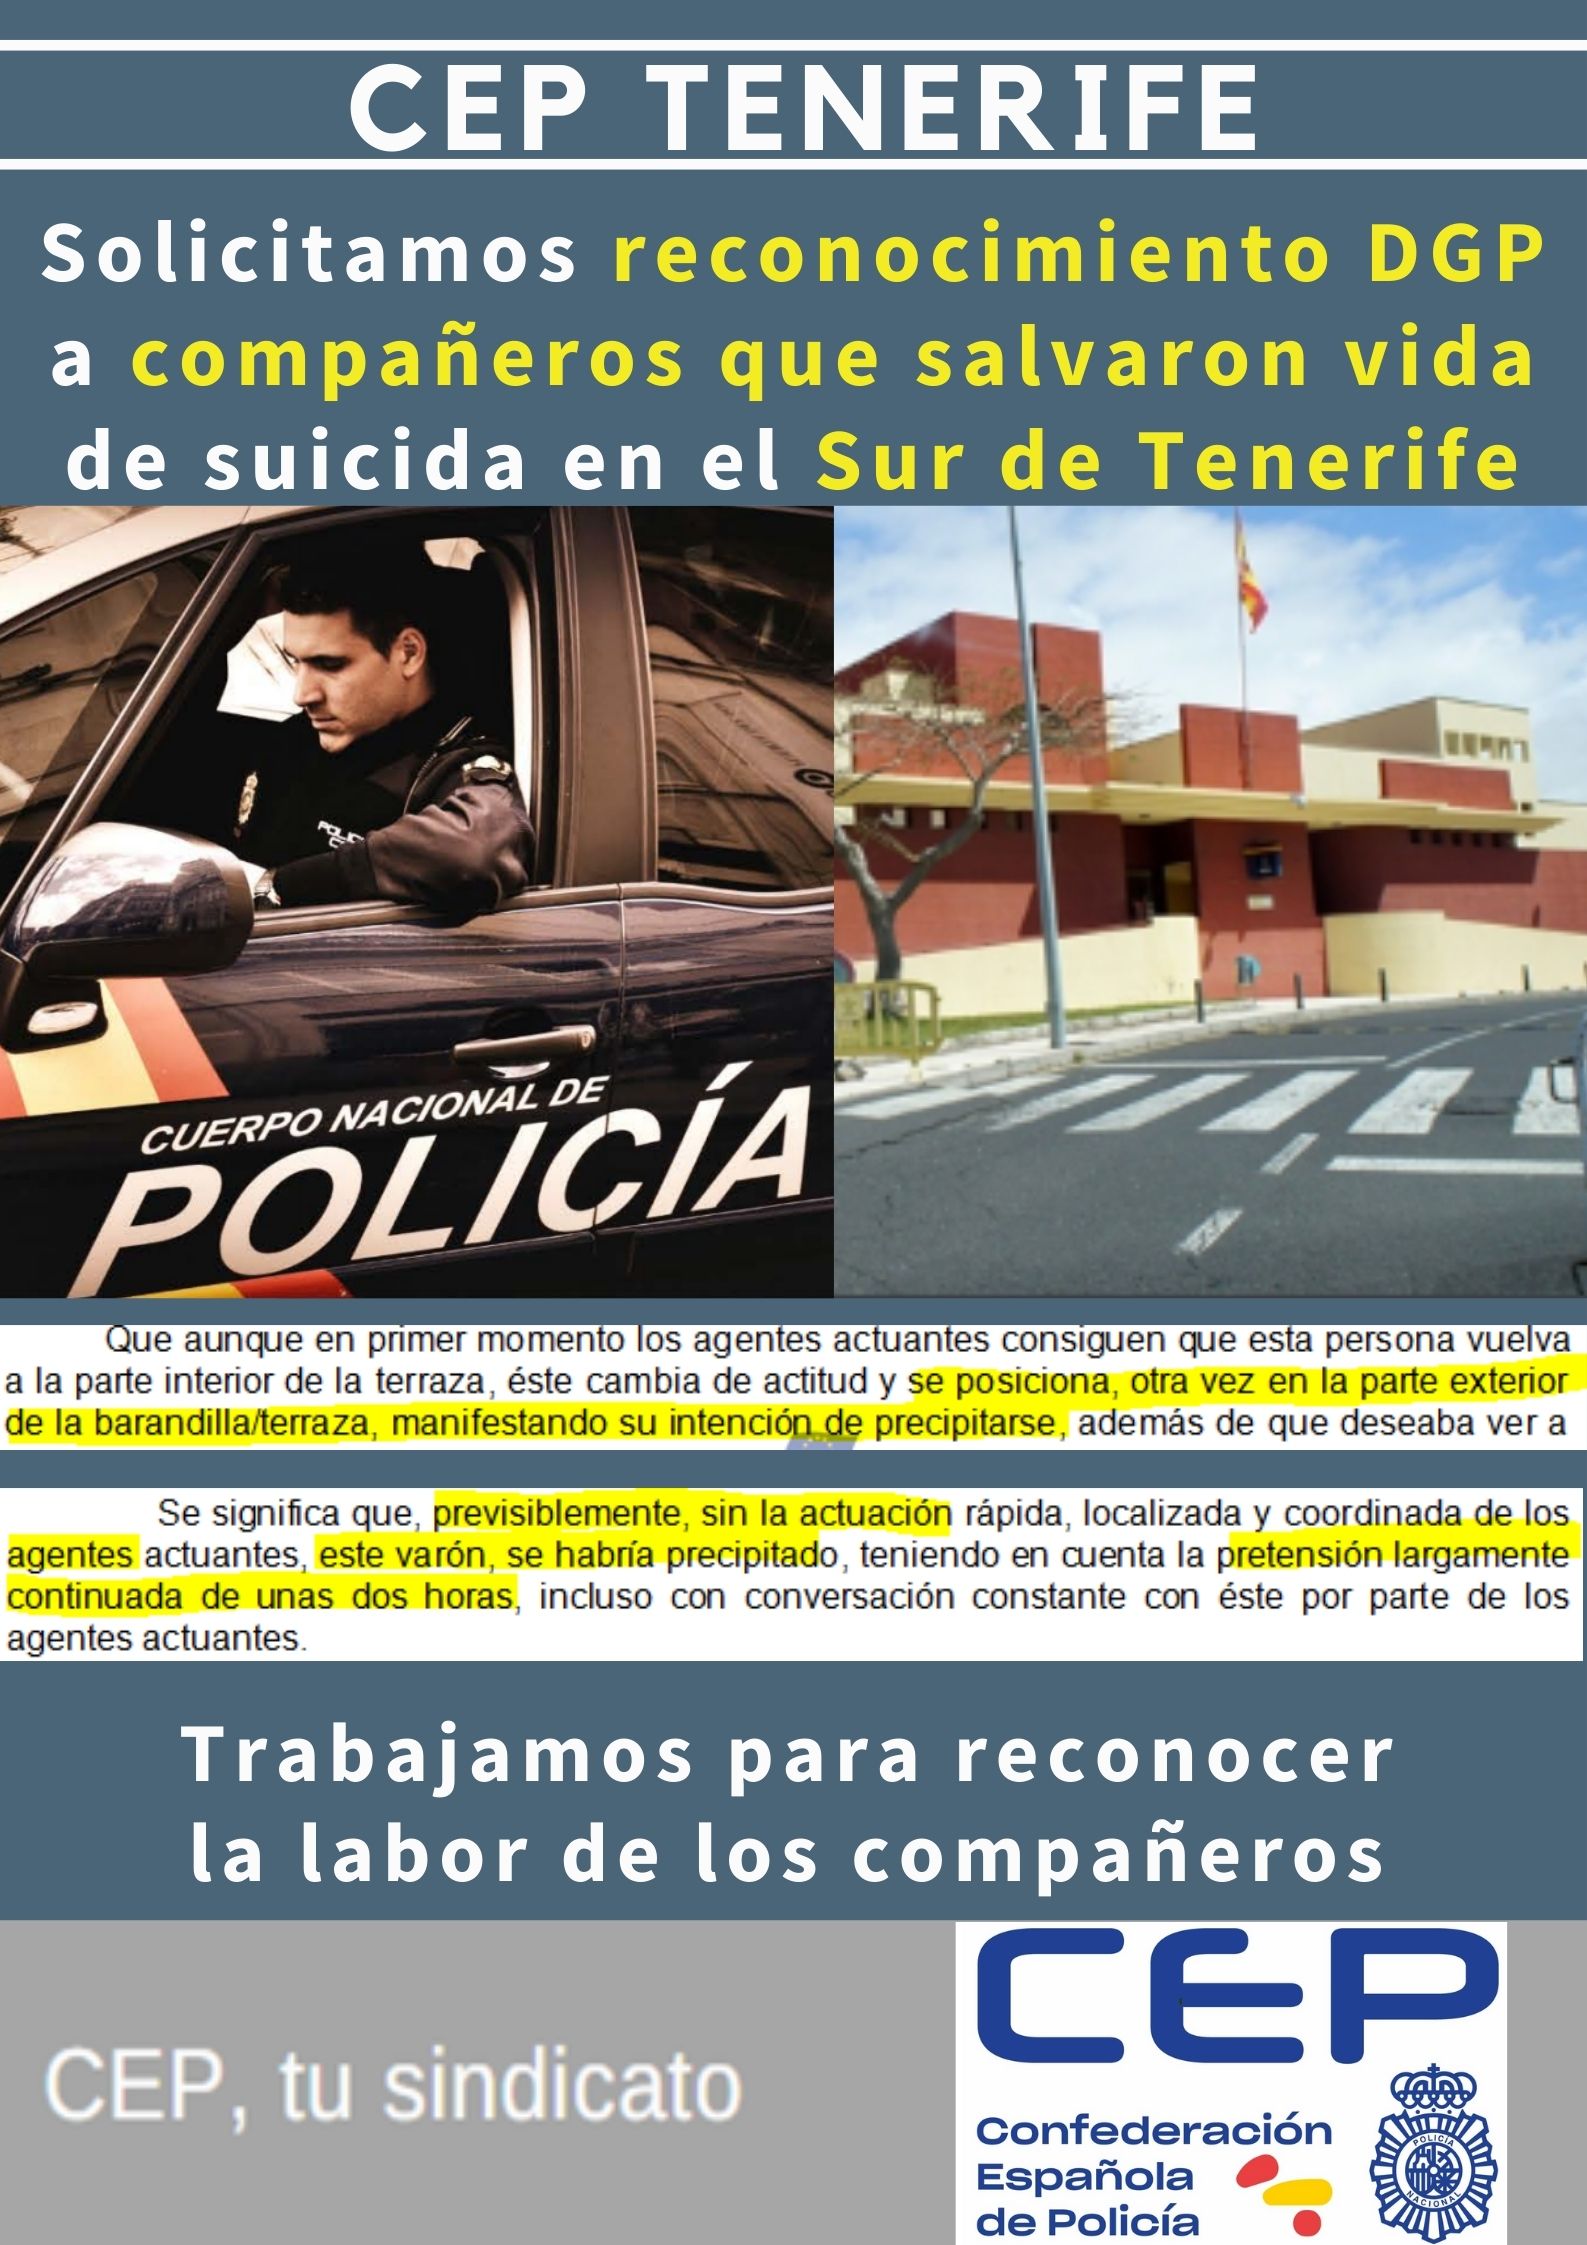 Solicitamos reconocimiento DGP a compañeros salvaron vida a suicida en Sur de Tenerife